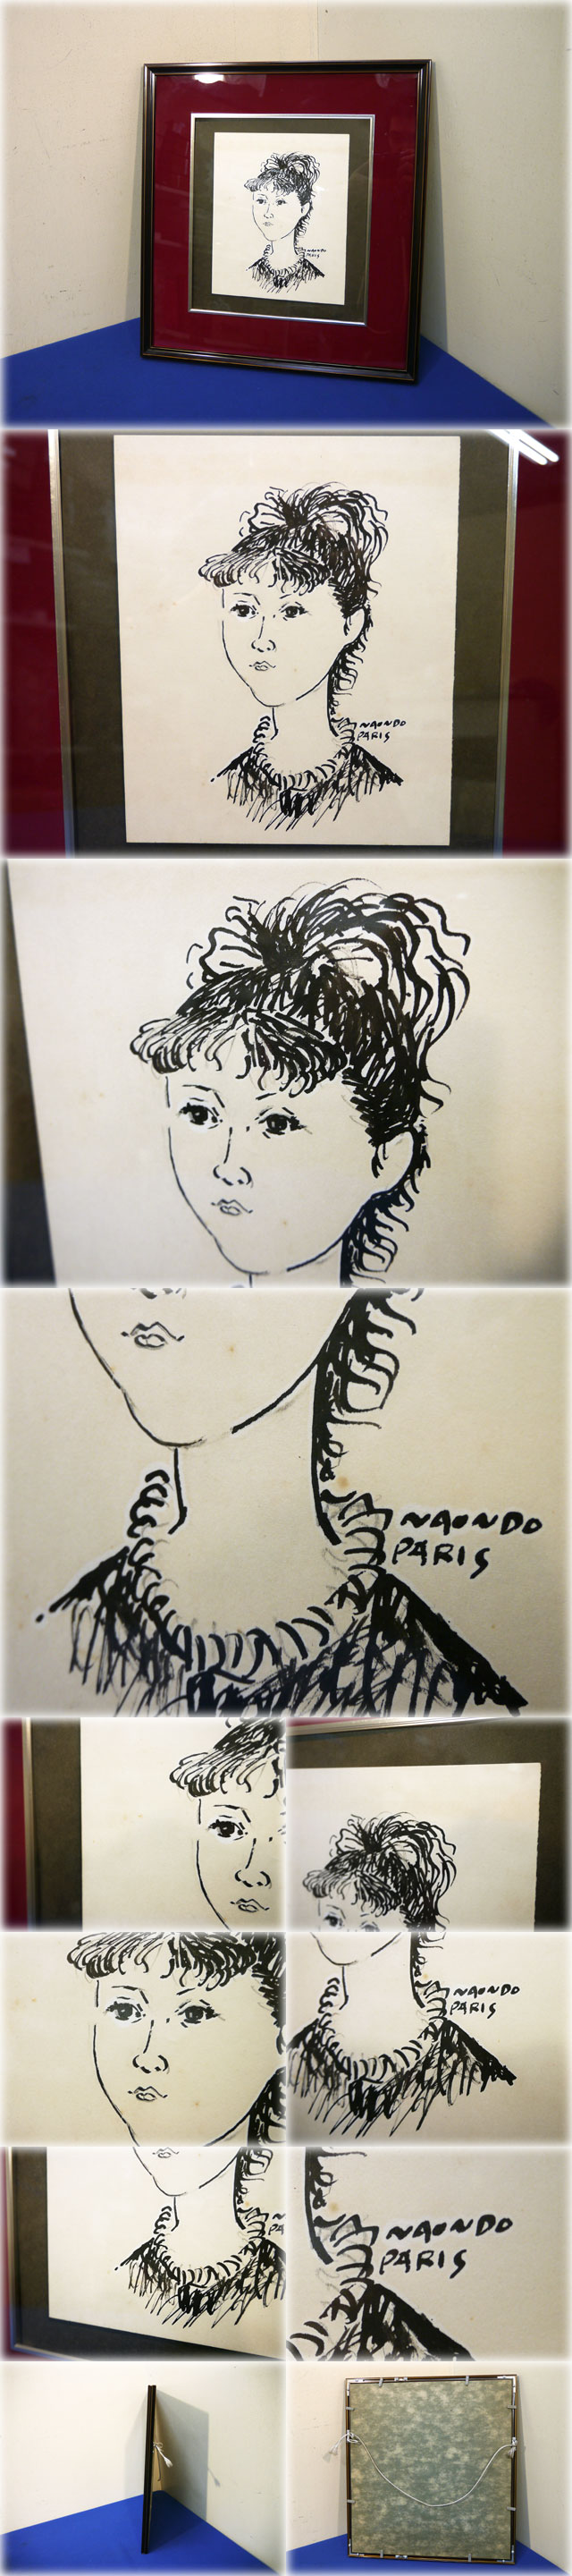 【安値】中村直人 ペン画 (婦人画) サイン有 NAONDO PARIS 二科会会員 洋画家 彫刻家 物故作家 人物画